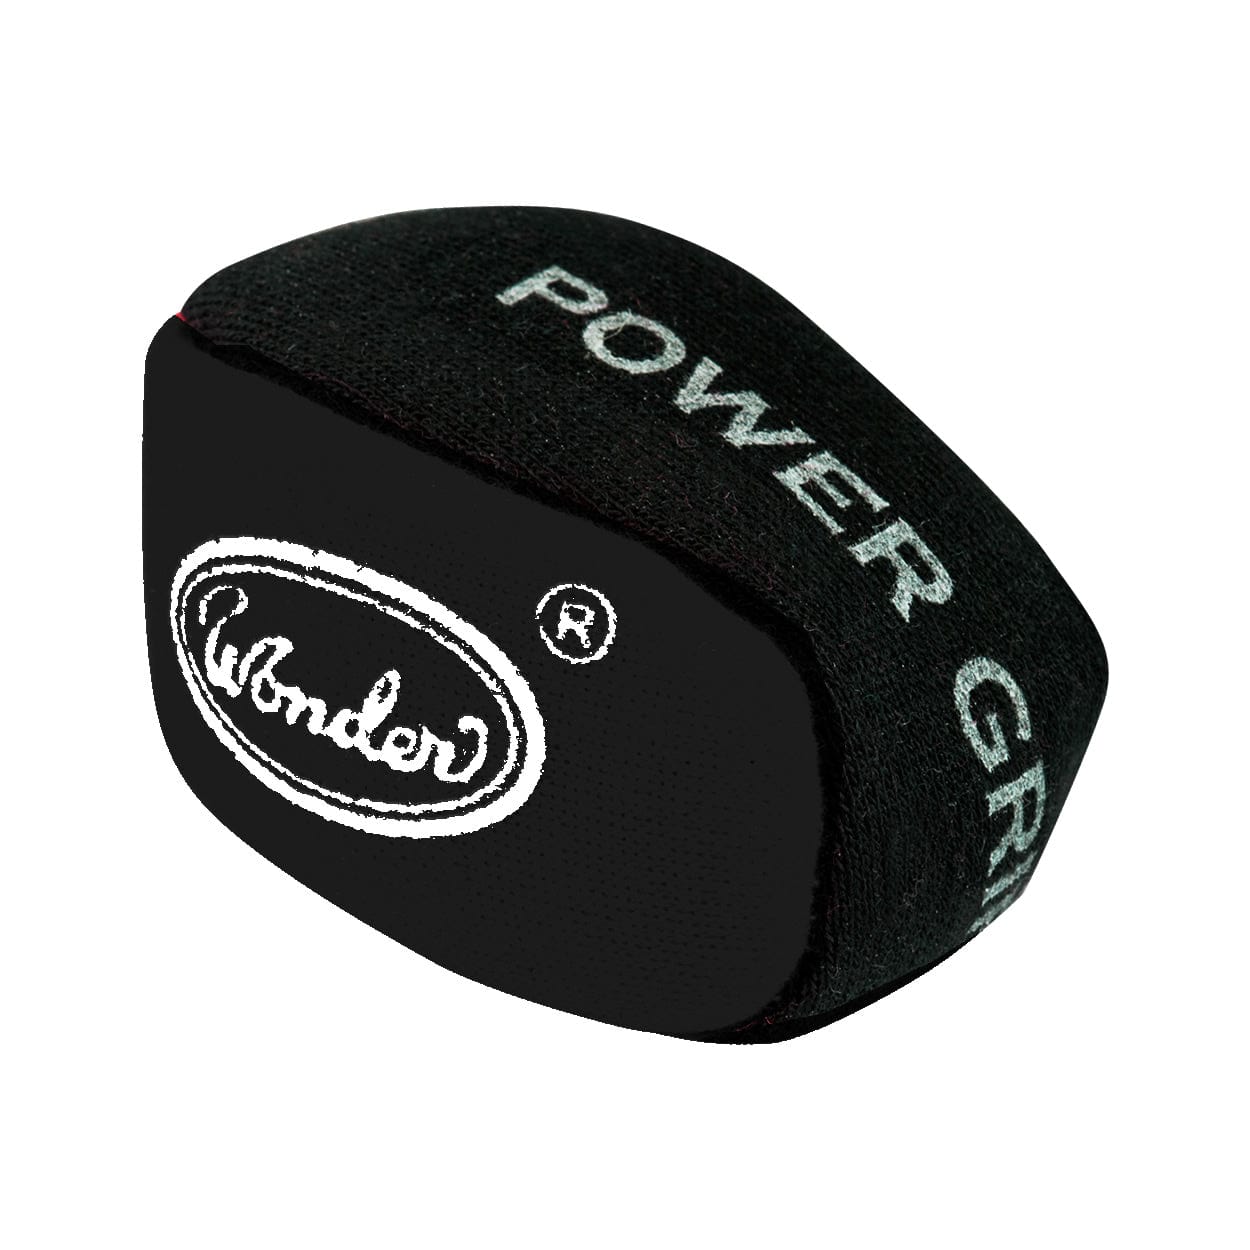 Designa Power Grip Ball - For Better Grip Dart Control - Absorbs Moisture Black